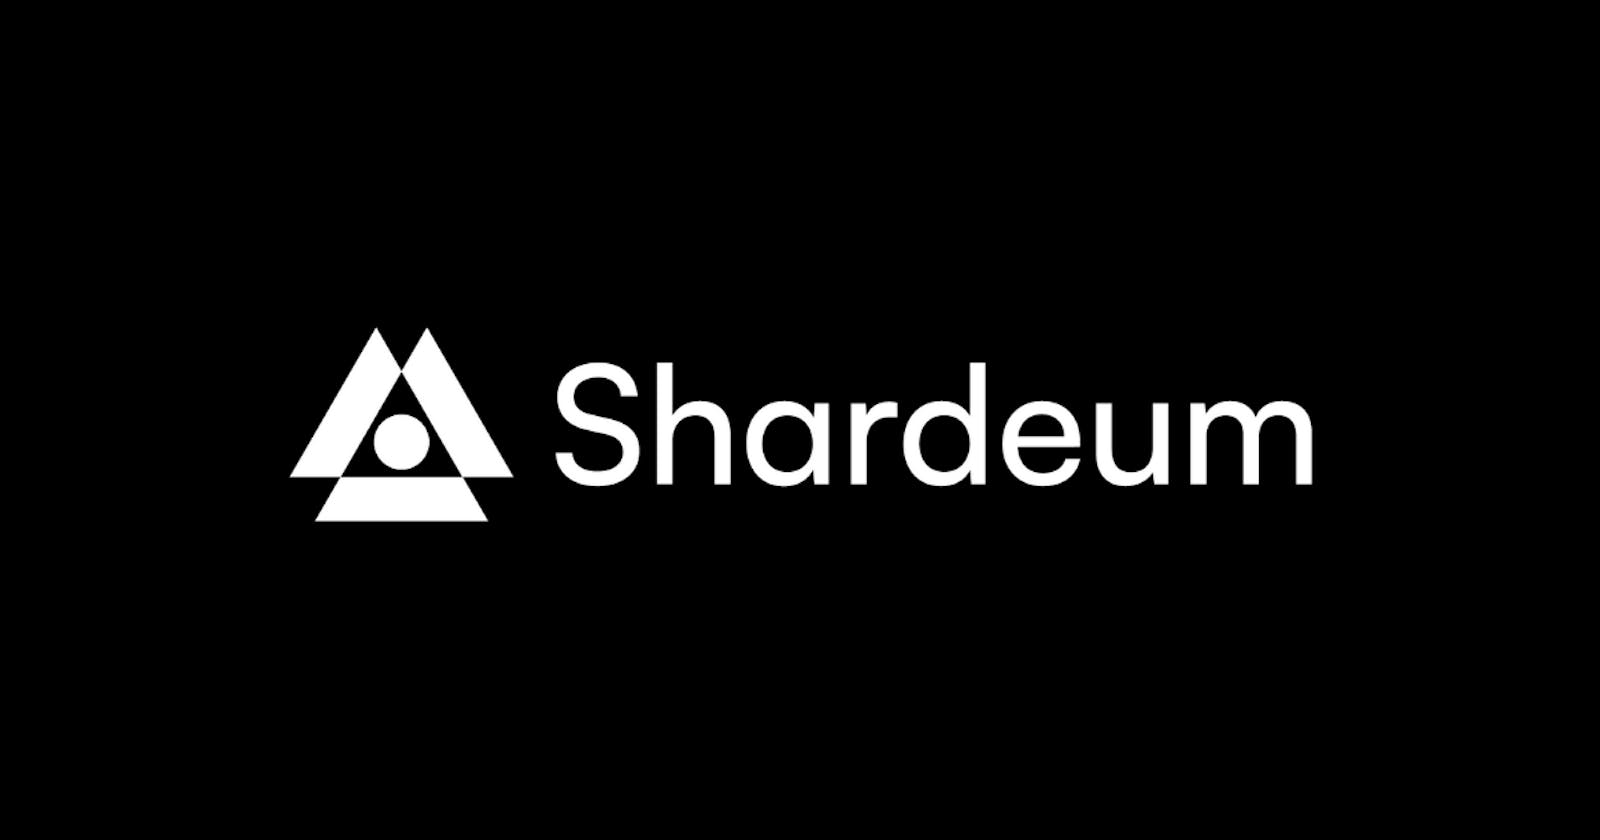 Shardeum Explained